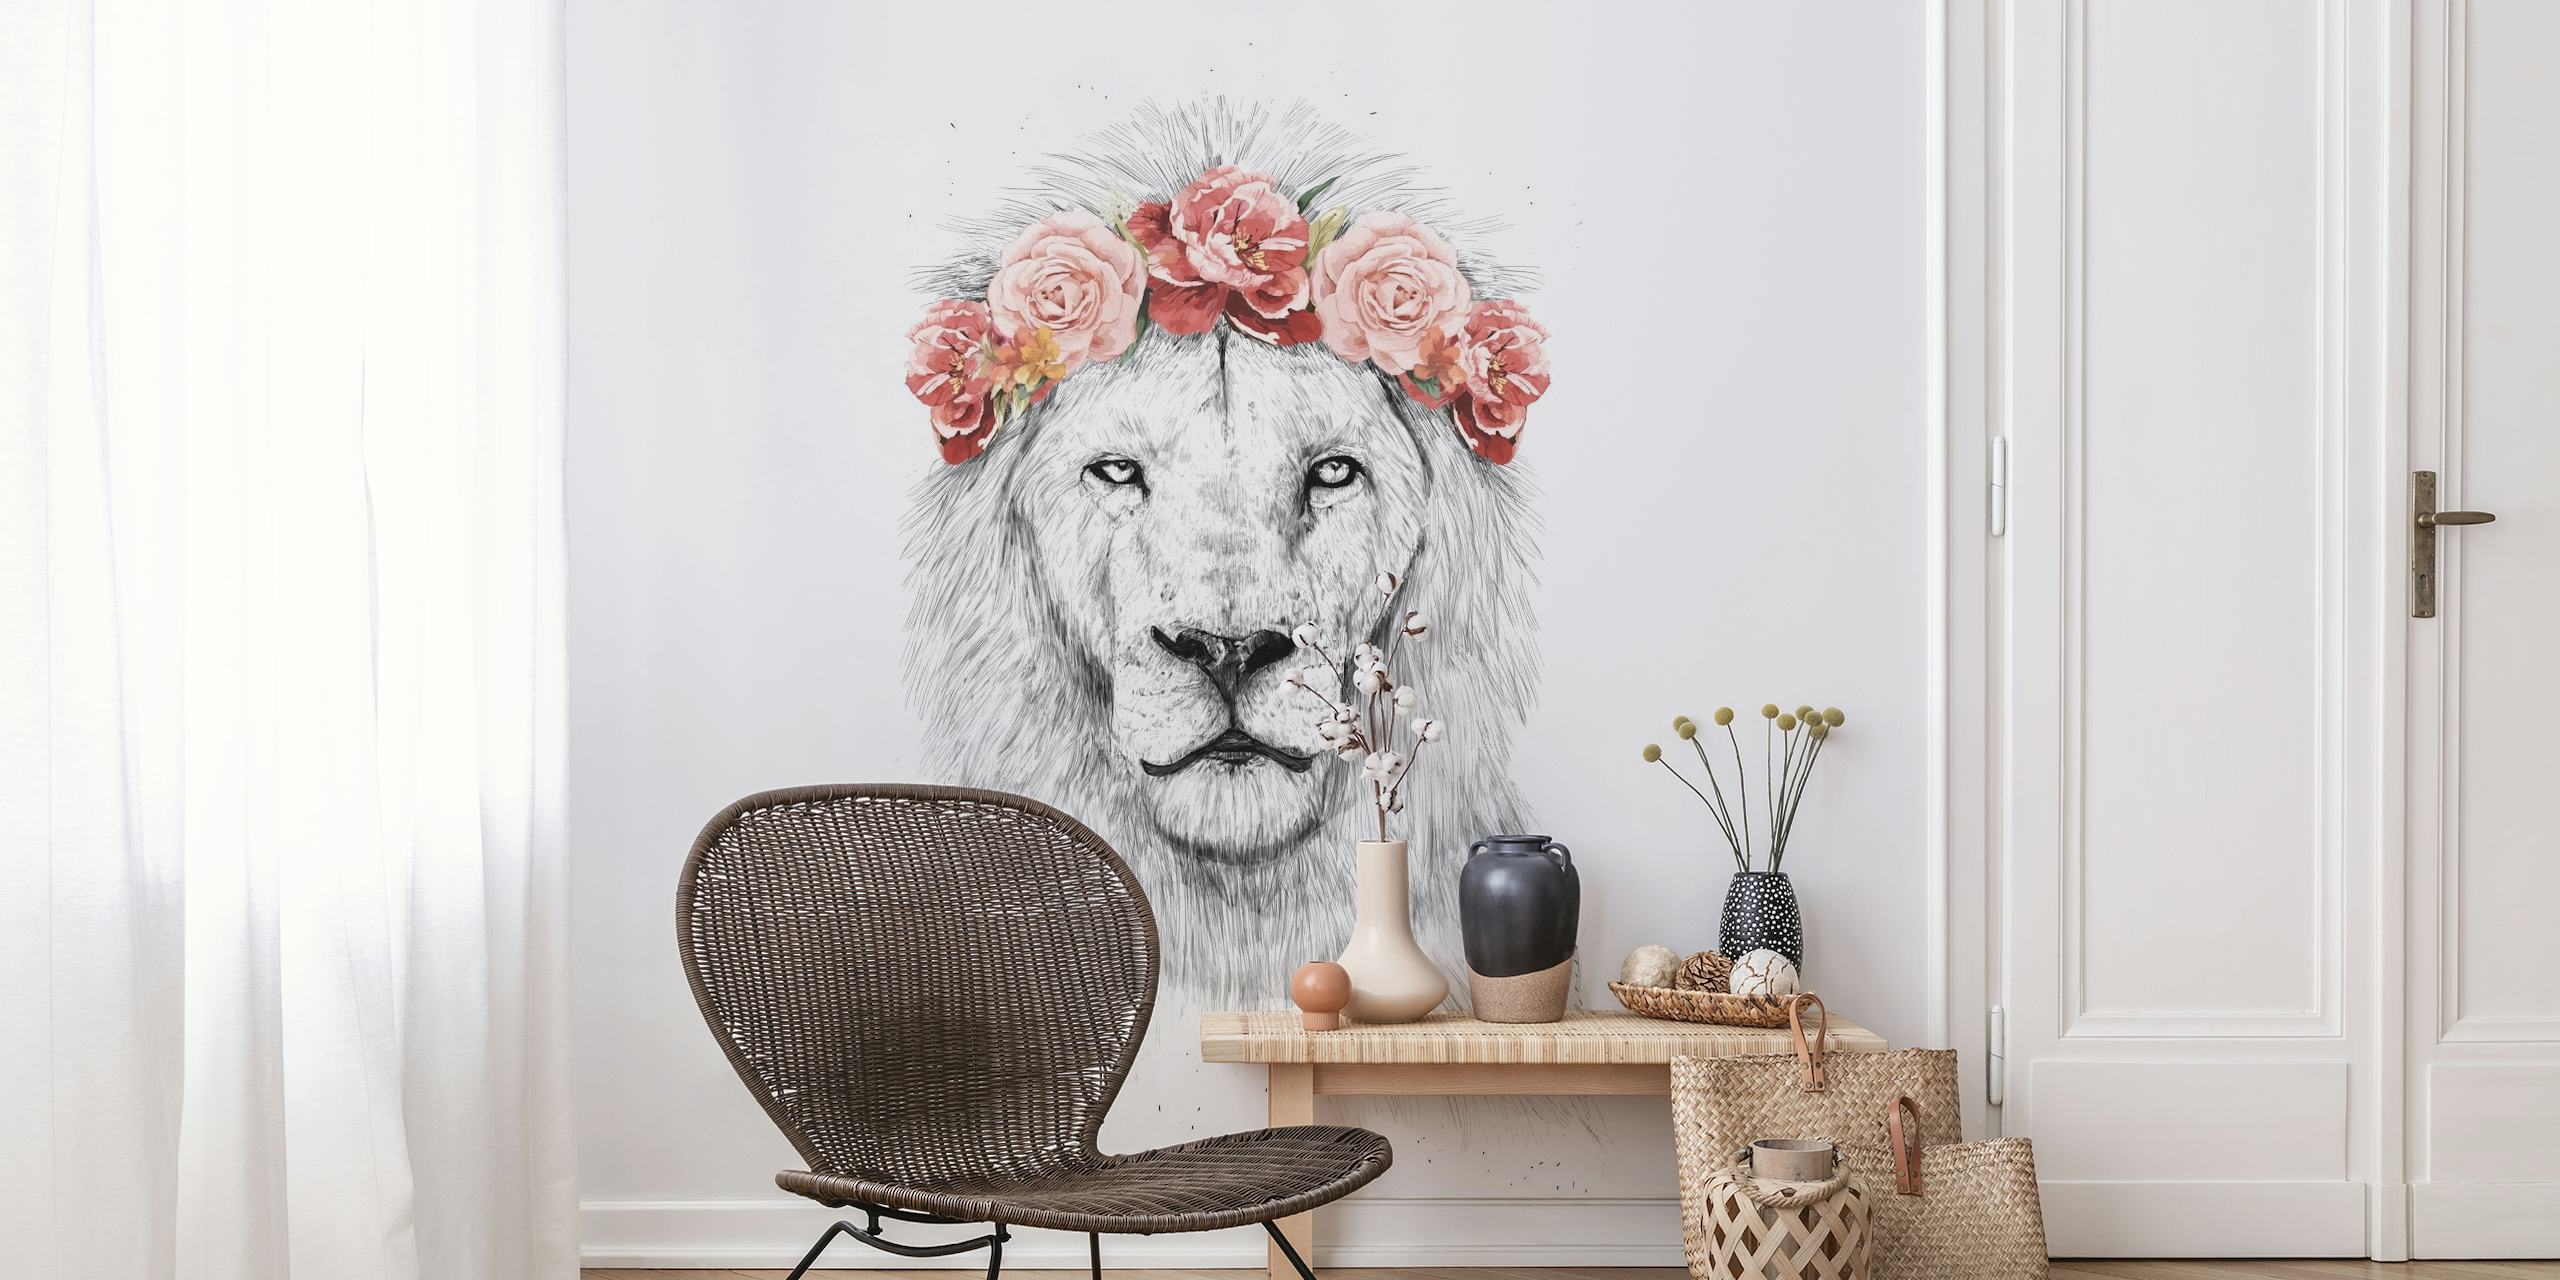 Festival lion wallpaper